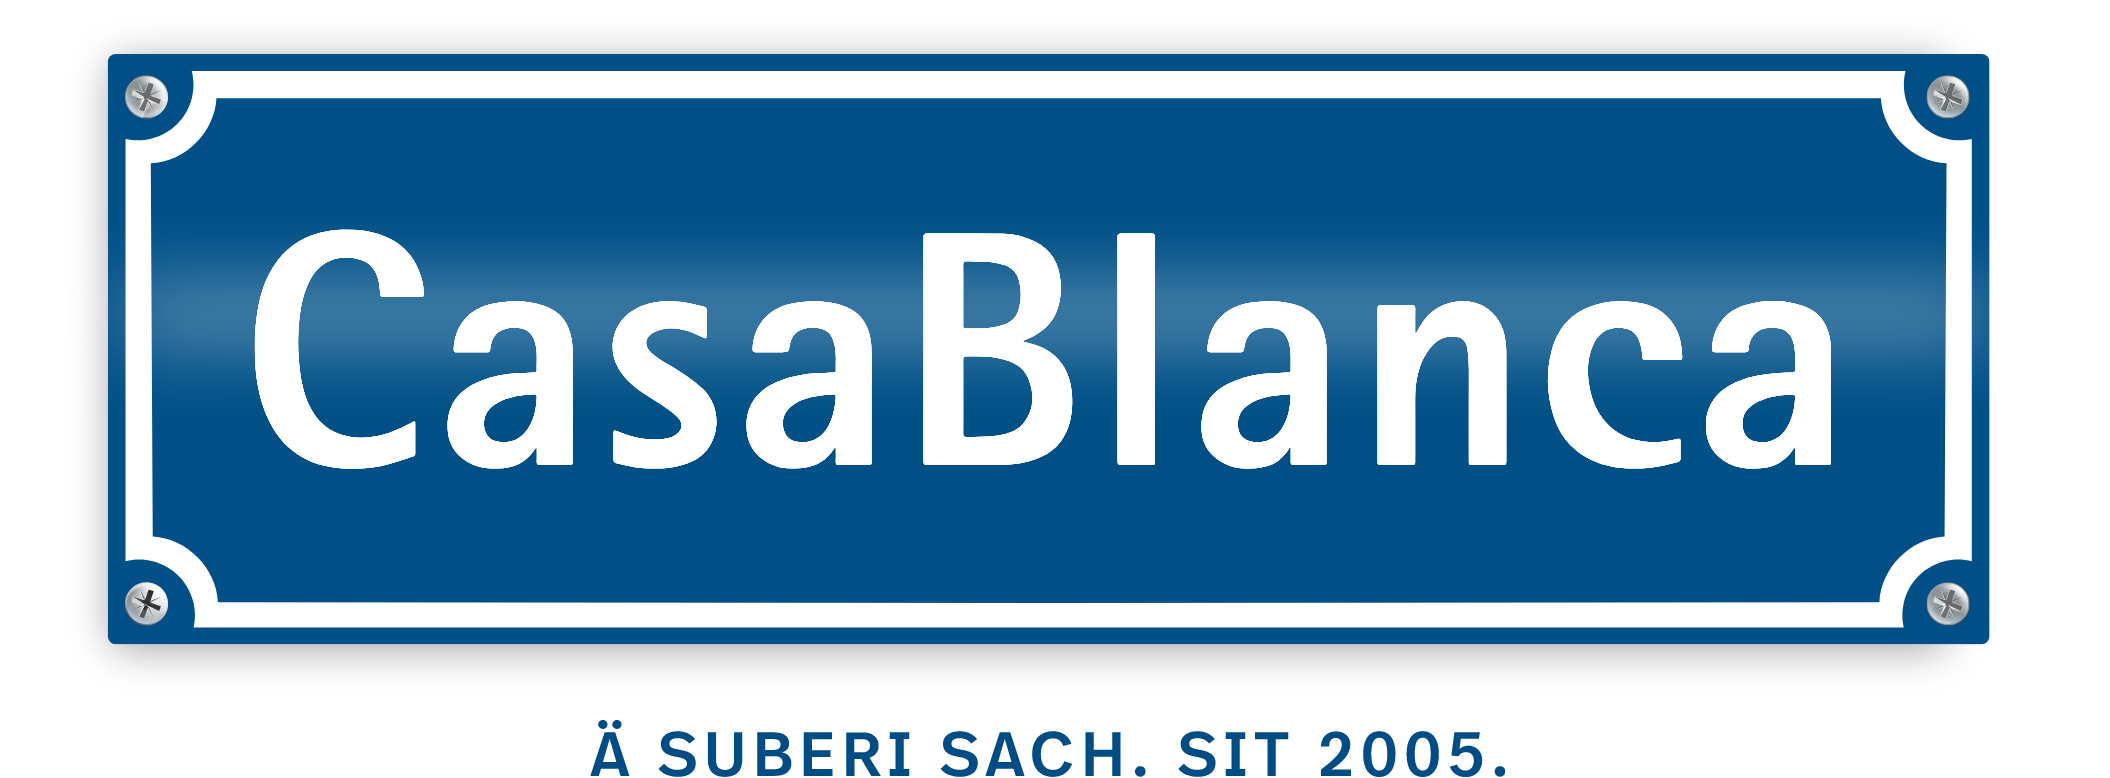 Das CasaBlanca Logo auf einerm Strassenschild.